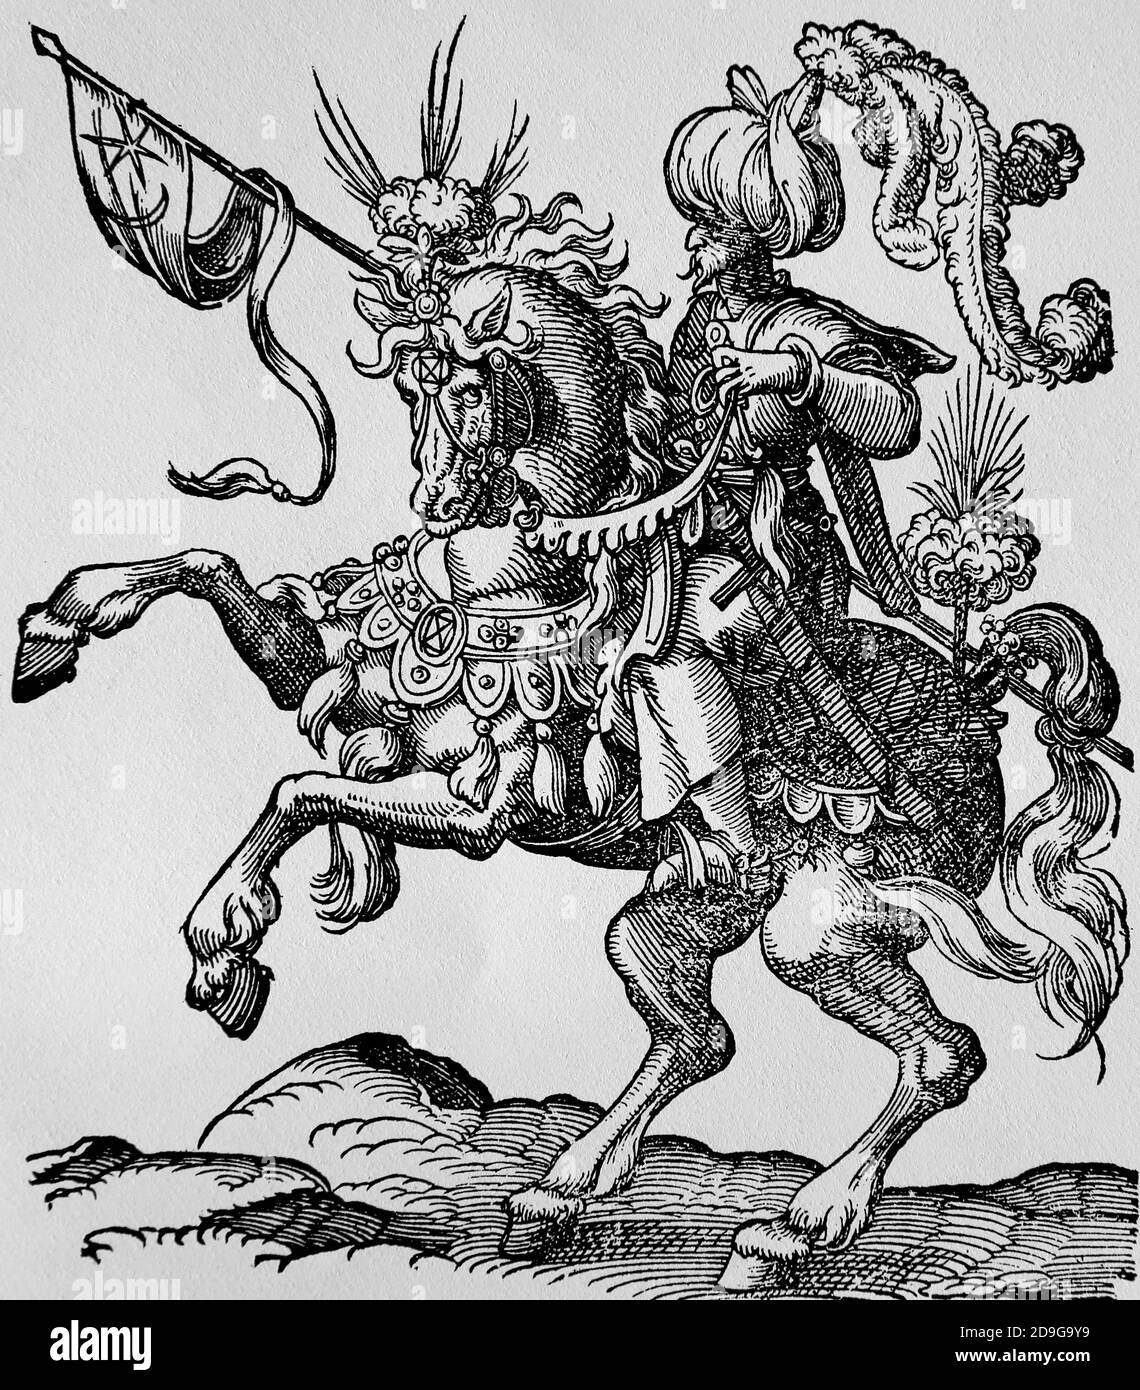 Moderne Zeit. Osmanisches Reich. 16. Jahrhundert. Türkischer Kavallerist mit Wimpel. Stich von Jost Amman, 16. Jahrhundert. Stockfoto